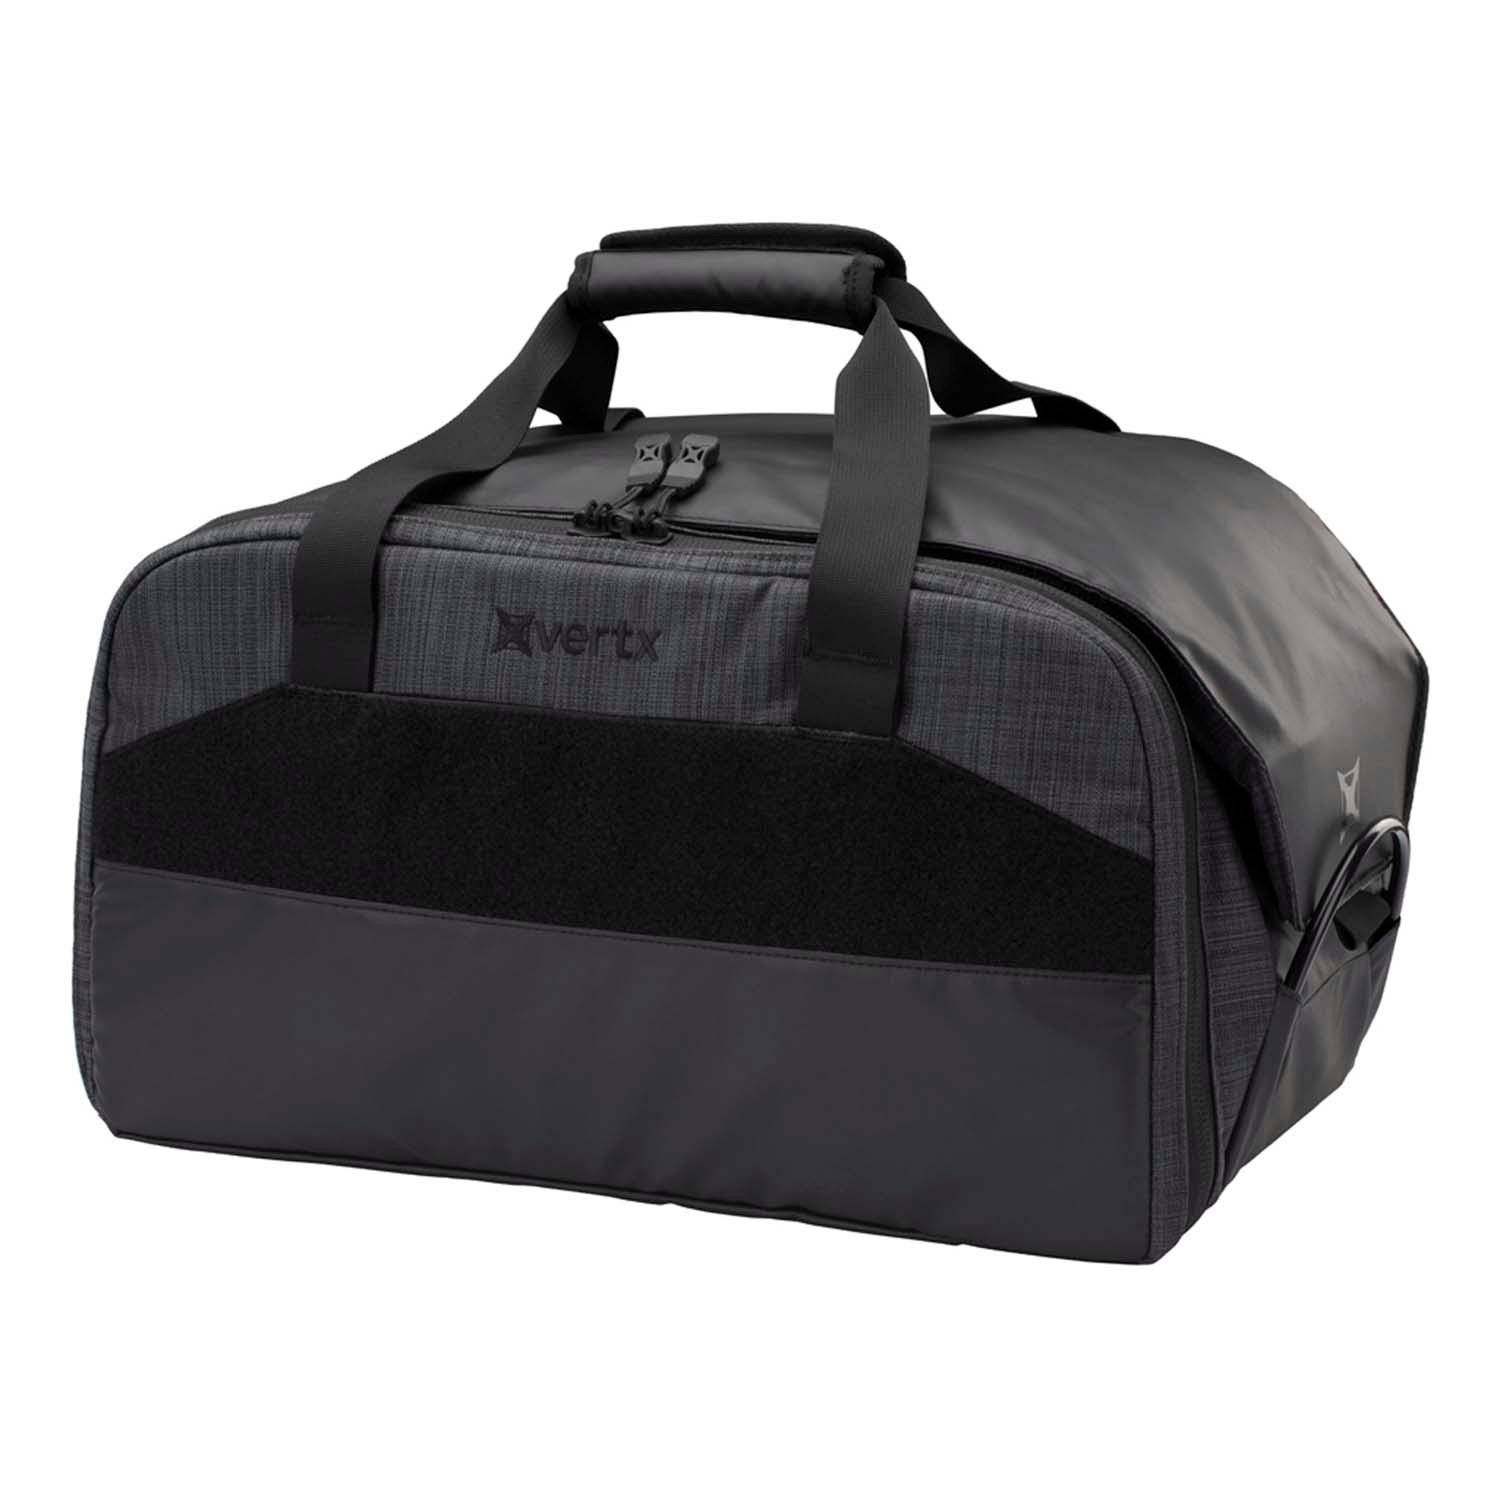 Vertx COF Heavy Range Bag